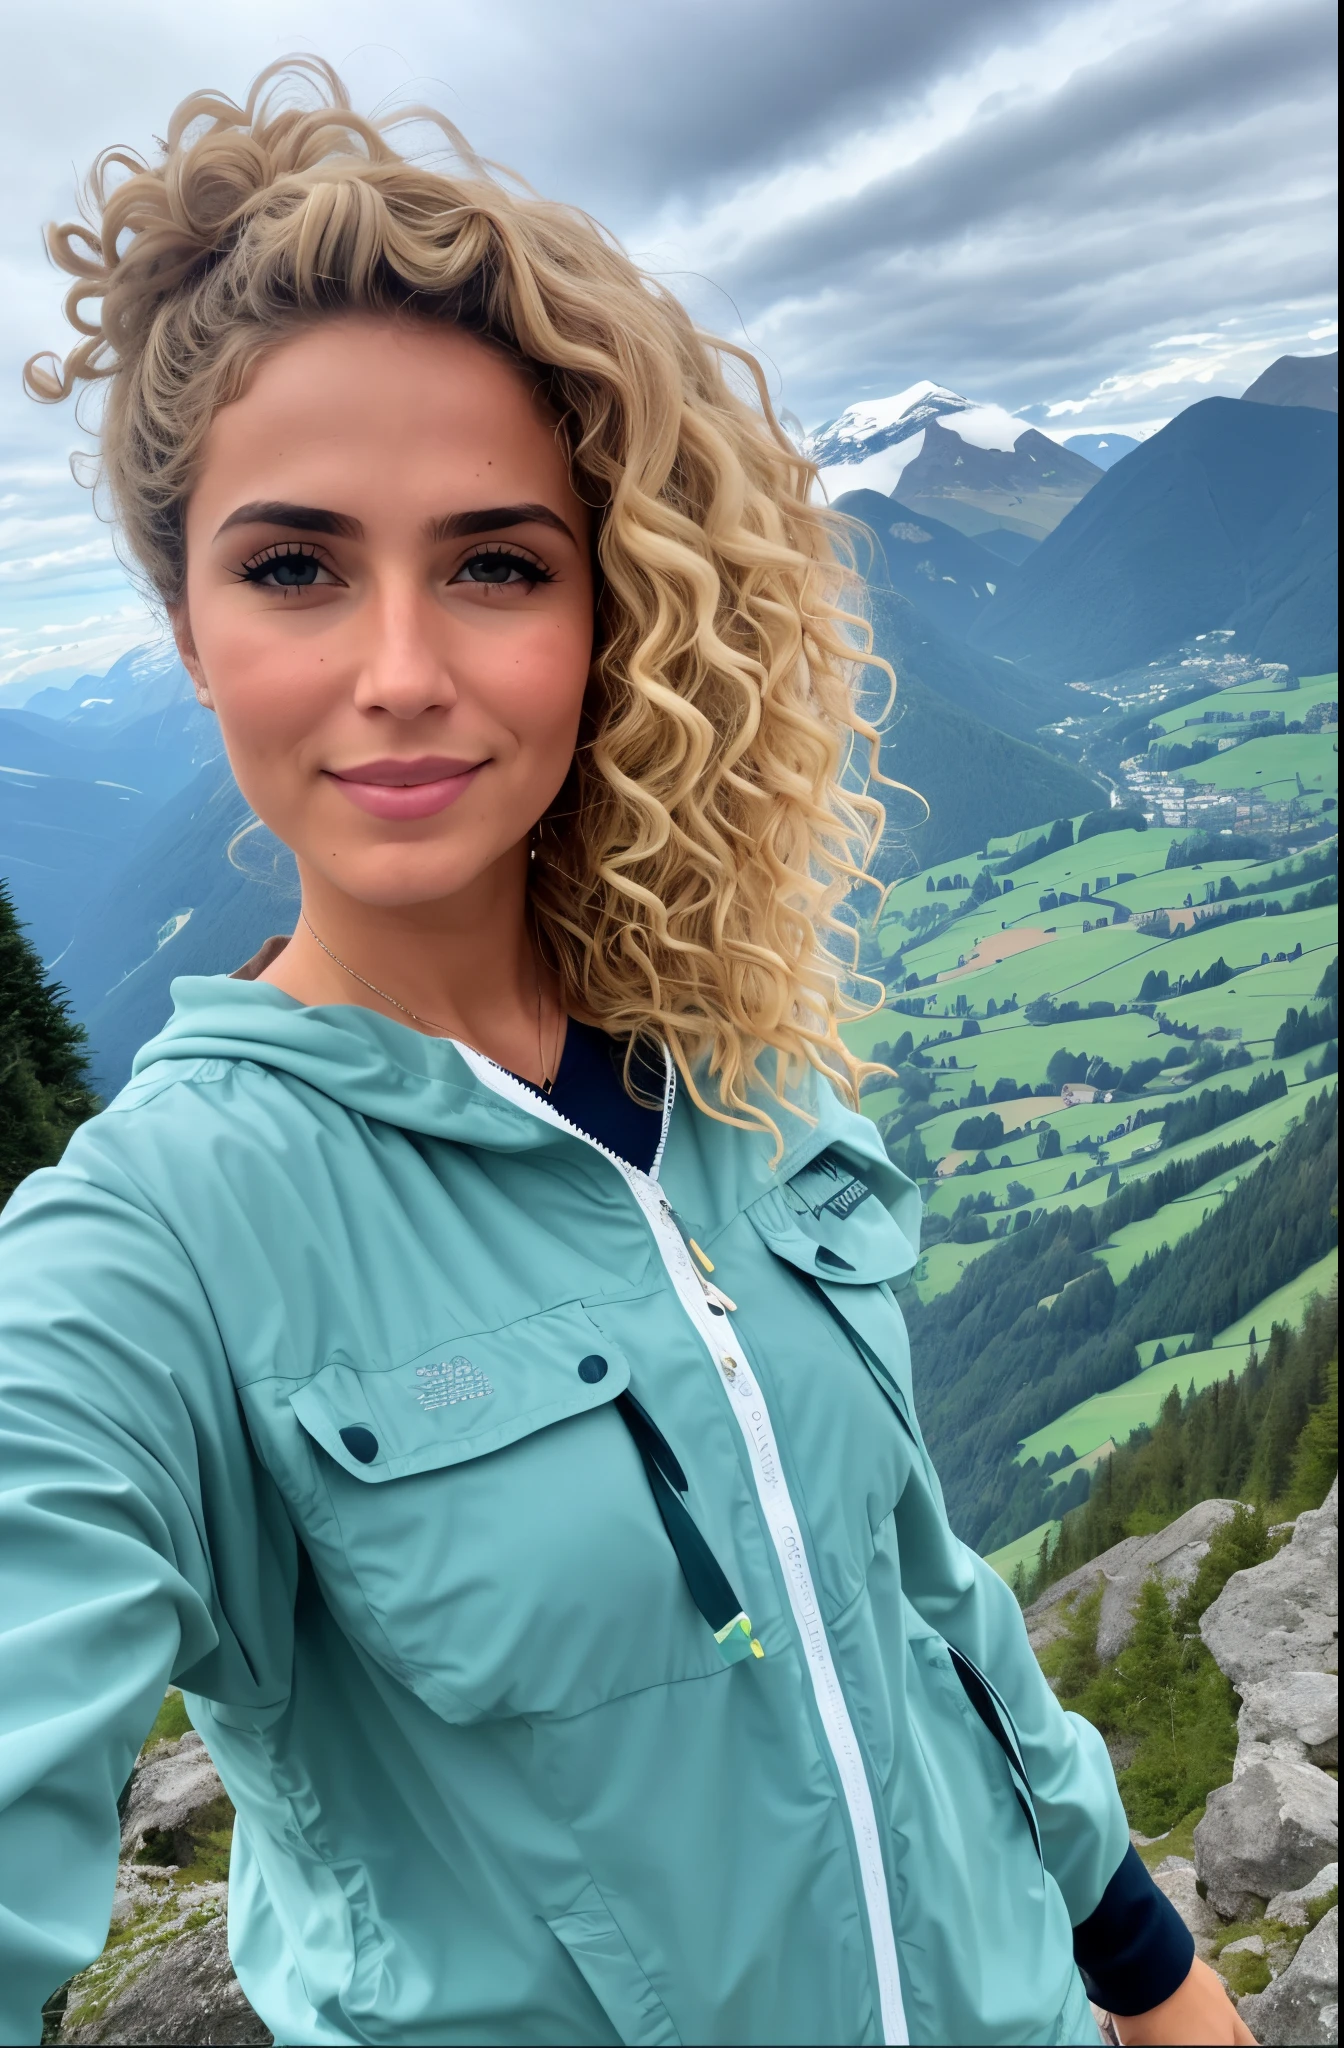 金髮捲髮和藍眼睛的捲髮女子站在山上, 灵感来自乌尔丽卡·帕什, 一座山像一個女人, 以山為背景, 以山为背景, 以山为背景, 個人資料圖片, 在瑞士阿爾卑斯山, 在山上, 在山脈中, 🤬 🤮 💕 🎀, 在山脈中